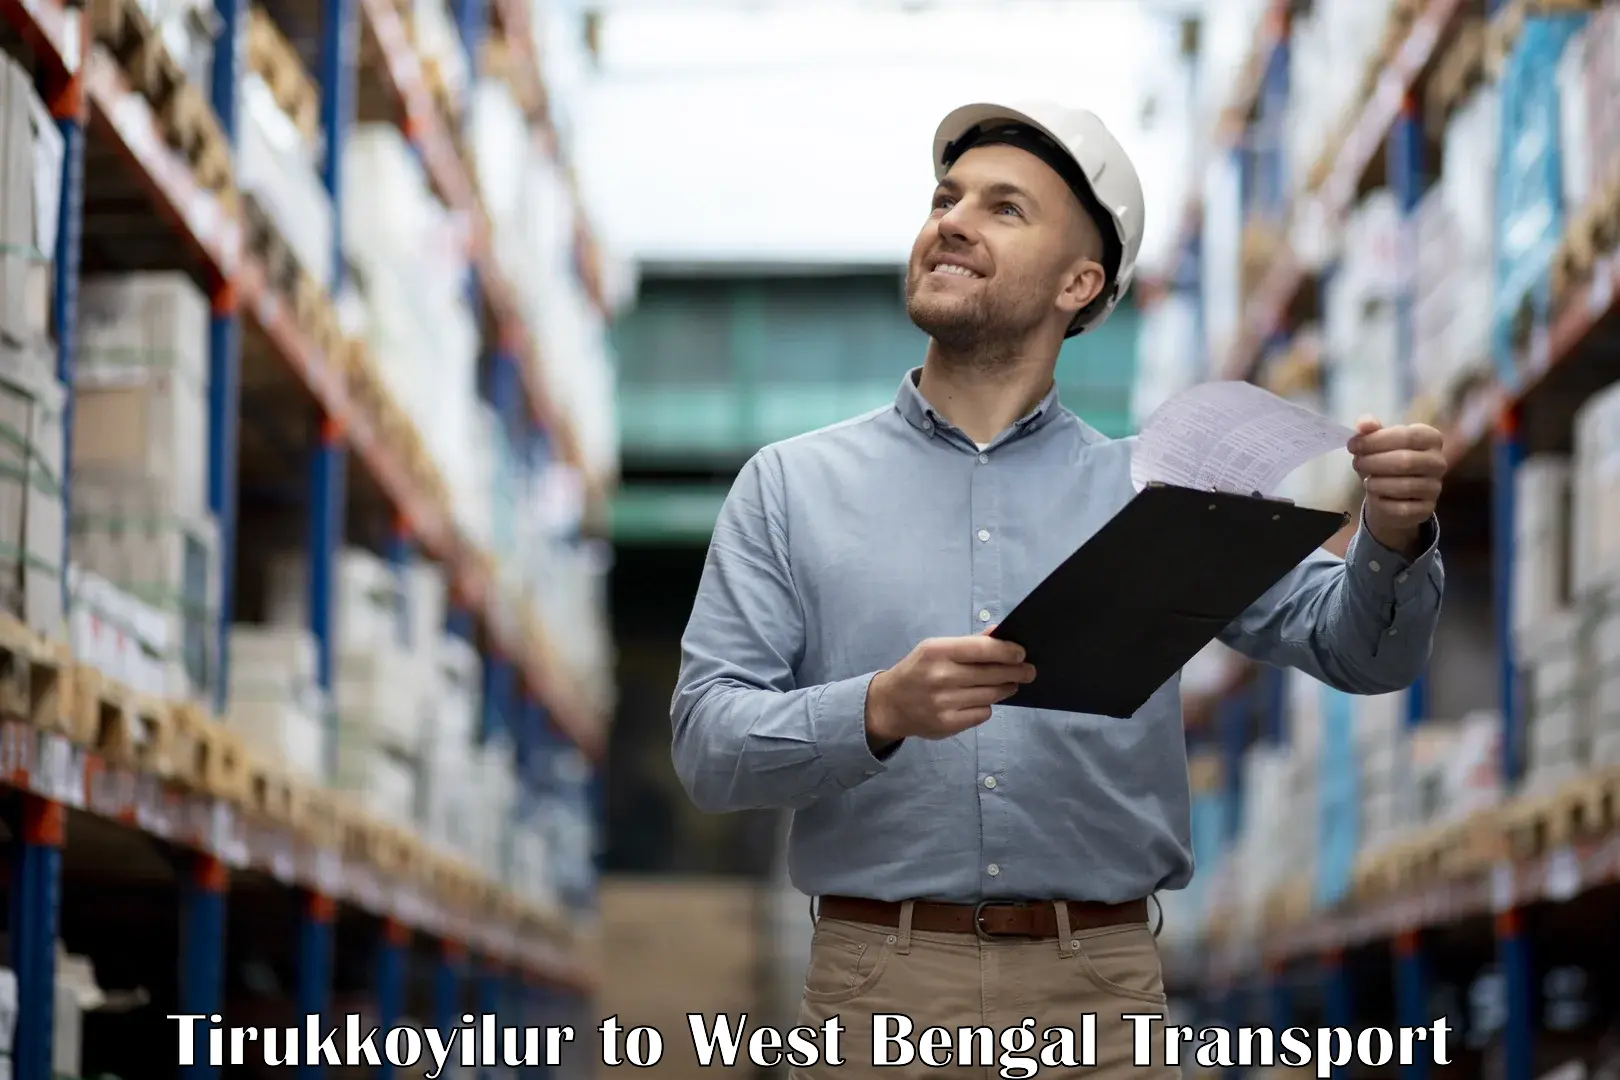 Furniture transport service Tirukkoyilur to Tarkeshwar